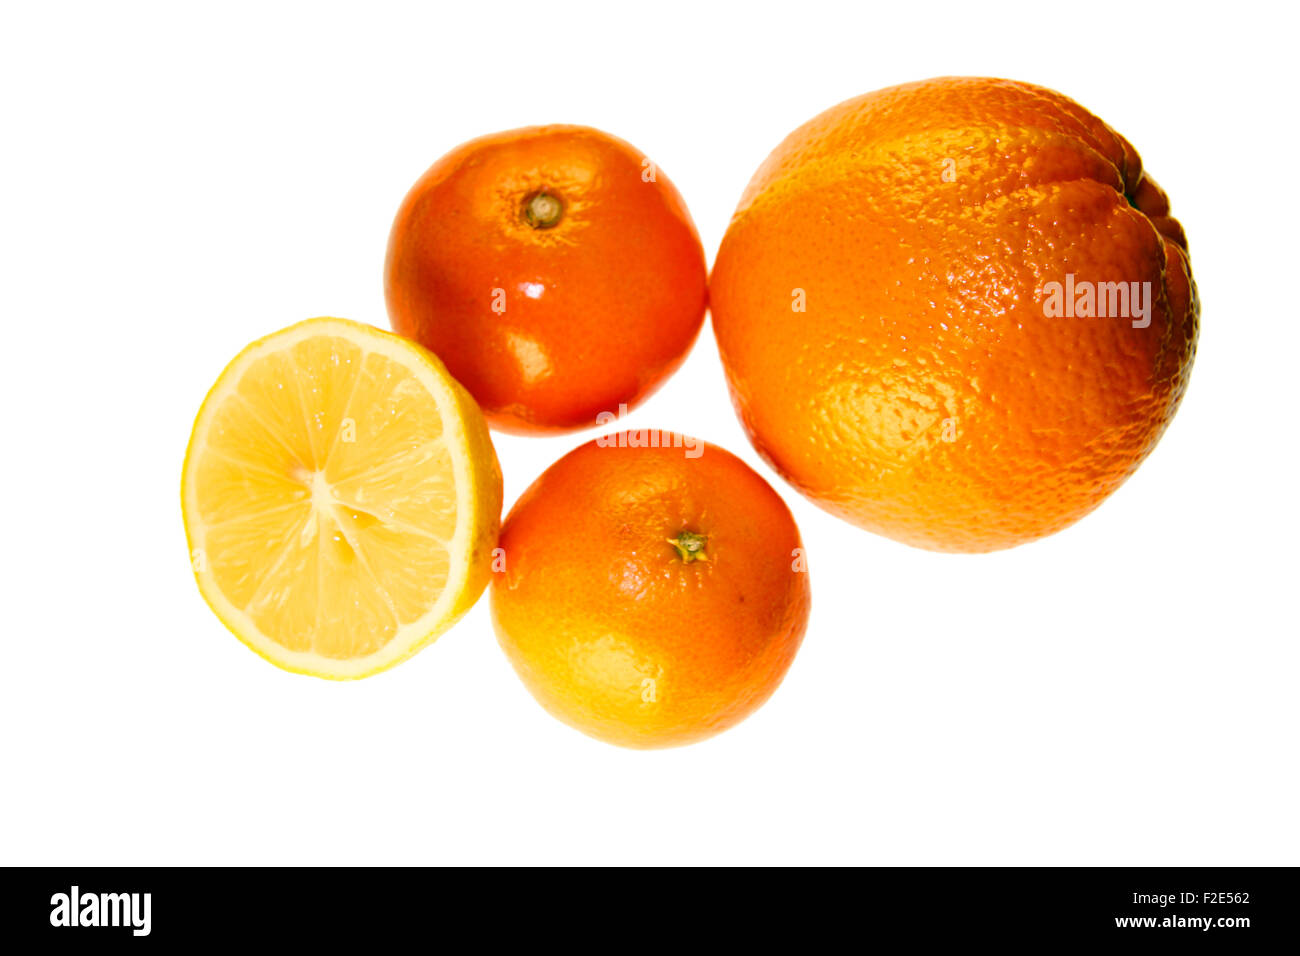 Suedfruechte: Zitrone, Mandarine, Clementine, Orange - Symbolbild Nahrungsmittel. Stock Photo